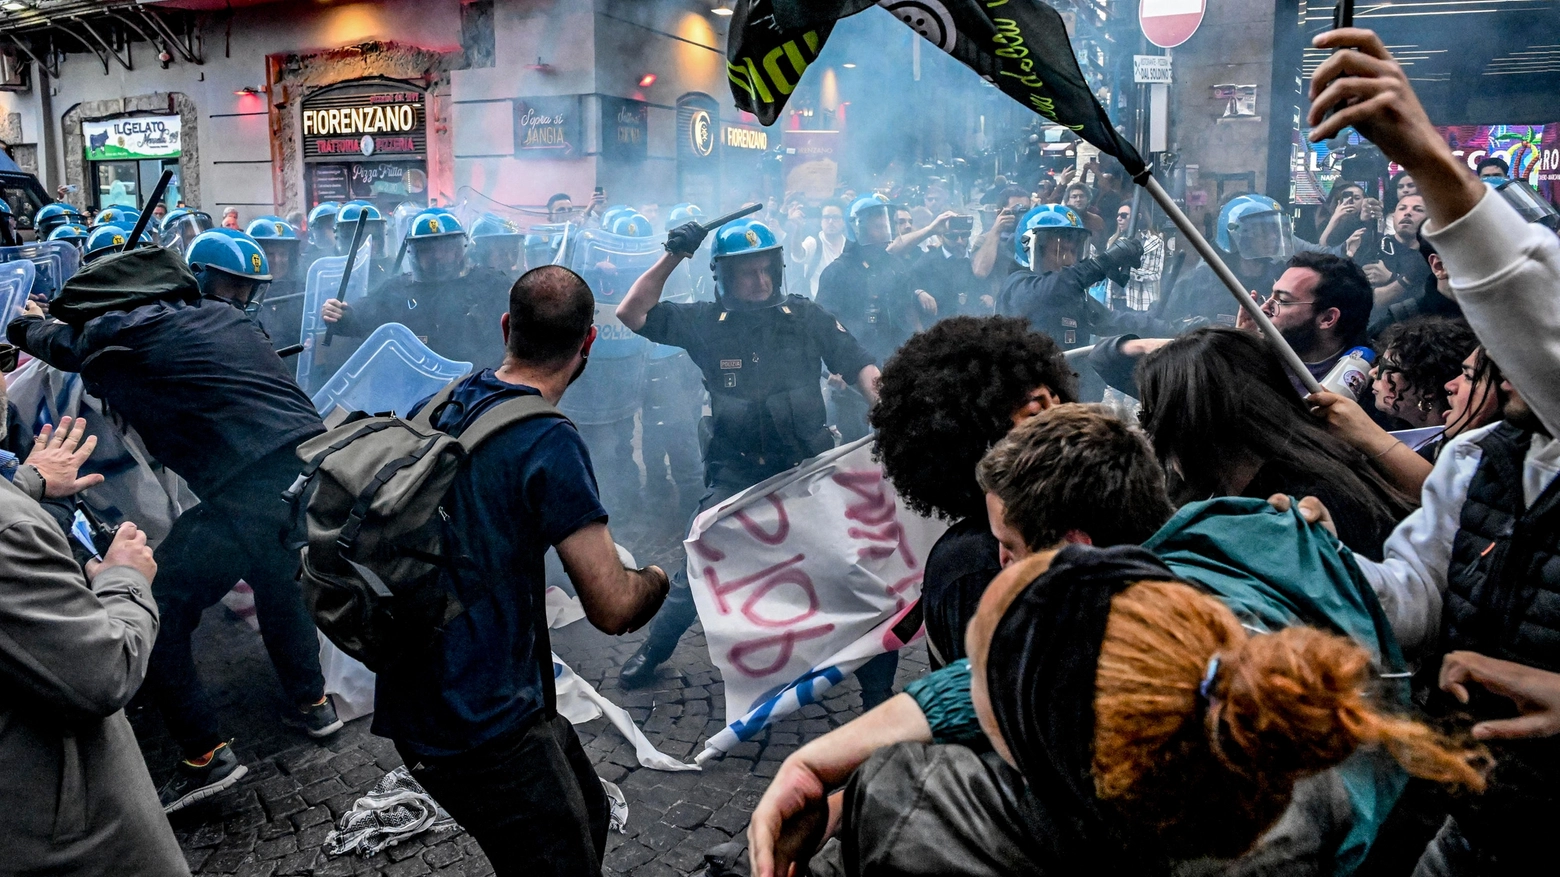 Protesta contro la Nato a Napoli: scontri tra i manifestanti e la polizia